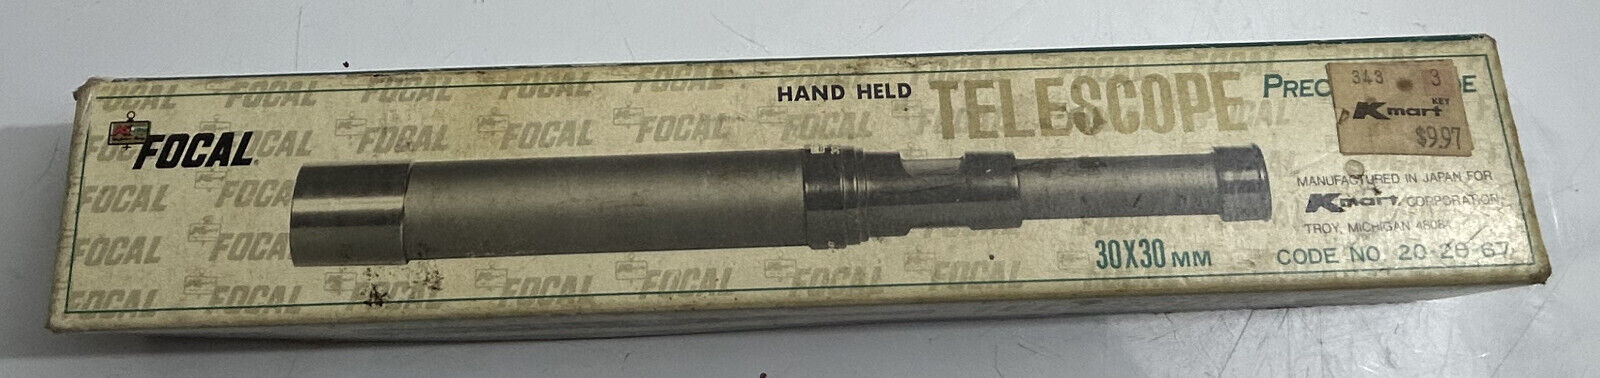 Focal Hand Held Telescope 30x30mm